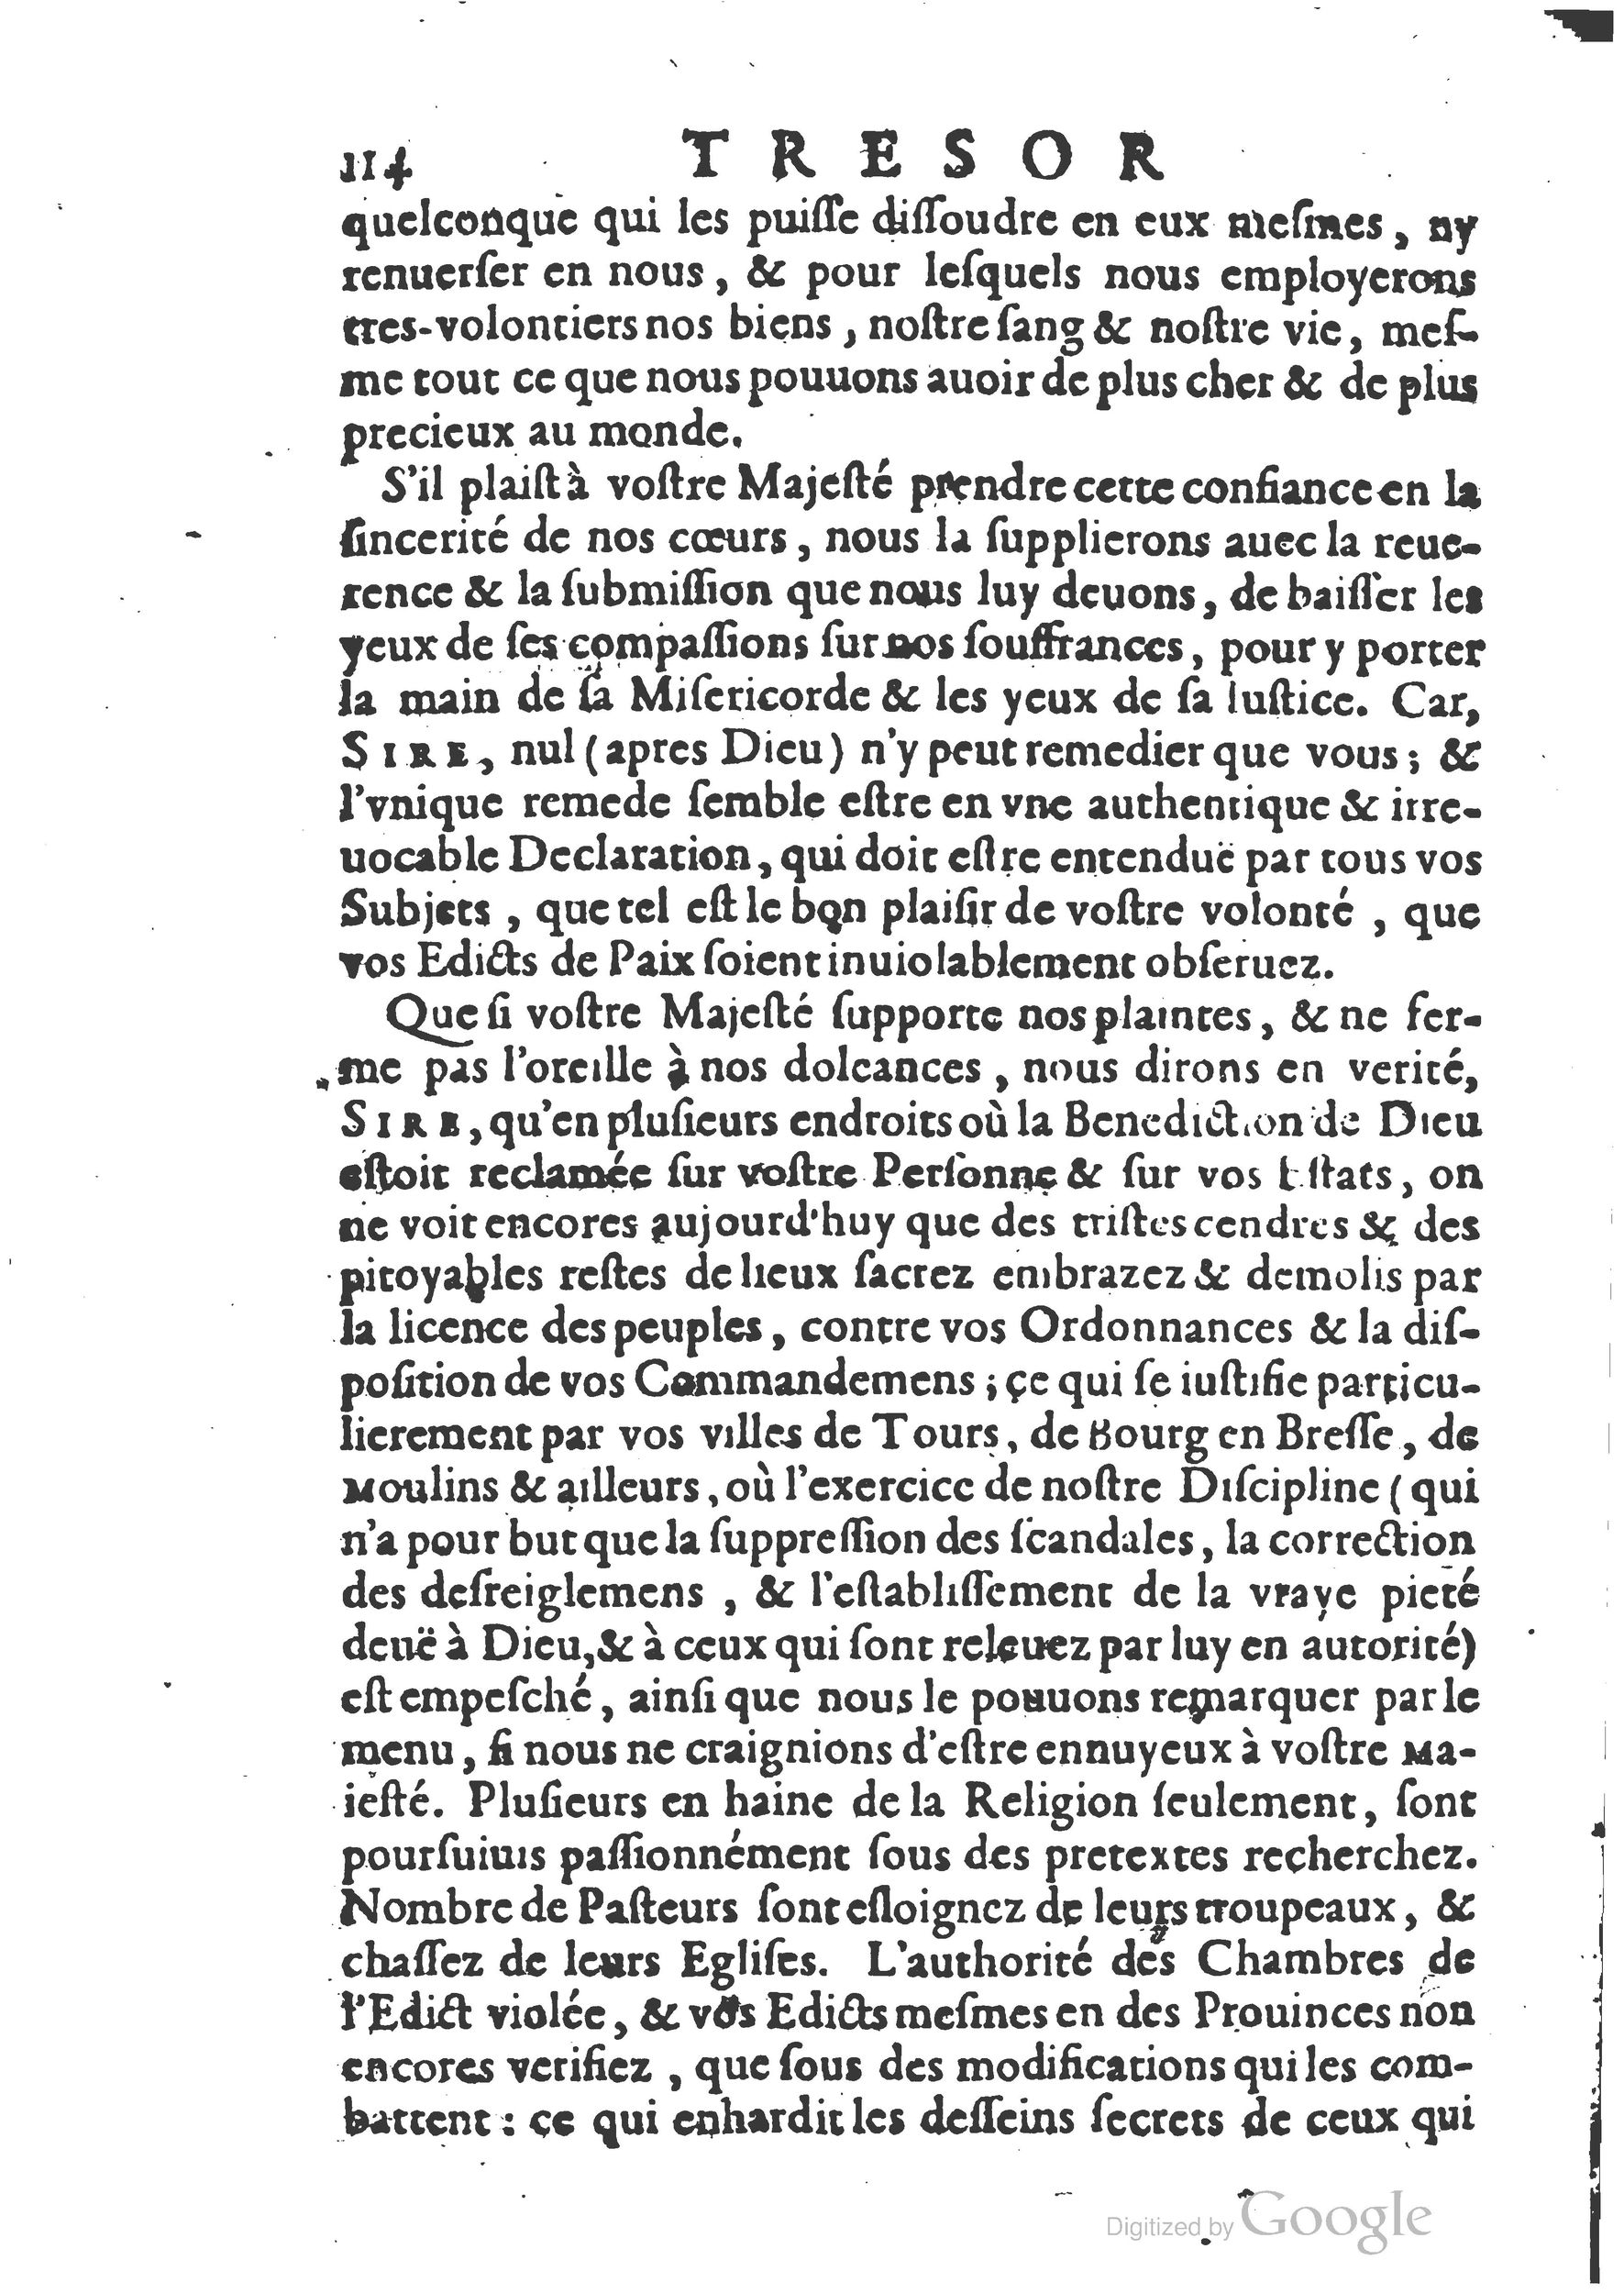 1654 Trésor des harangues, remontrances et oraisons funèbres Robin_BM Lyon_Page_133.jpg